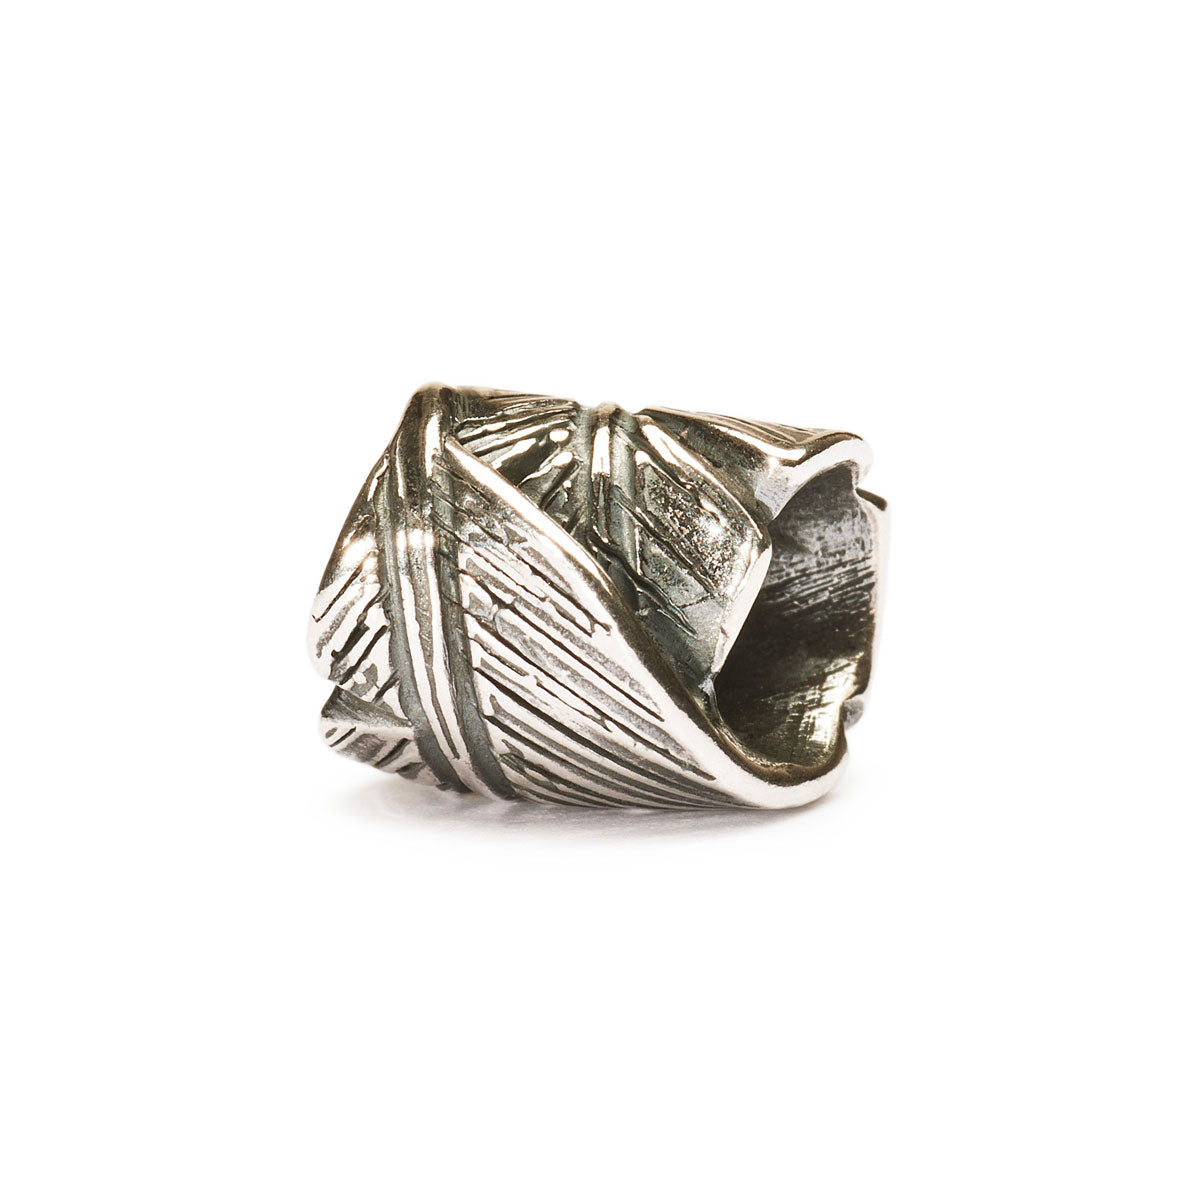 Il beads in argento Piuma raffigura una piuma attorcigliata su se stesso fino a formare una forma cilindrica.